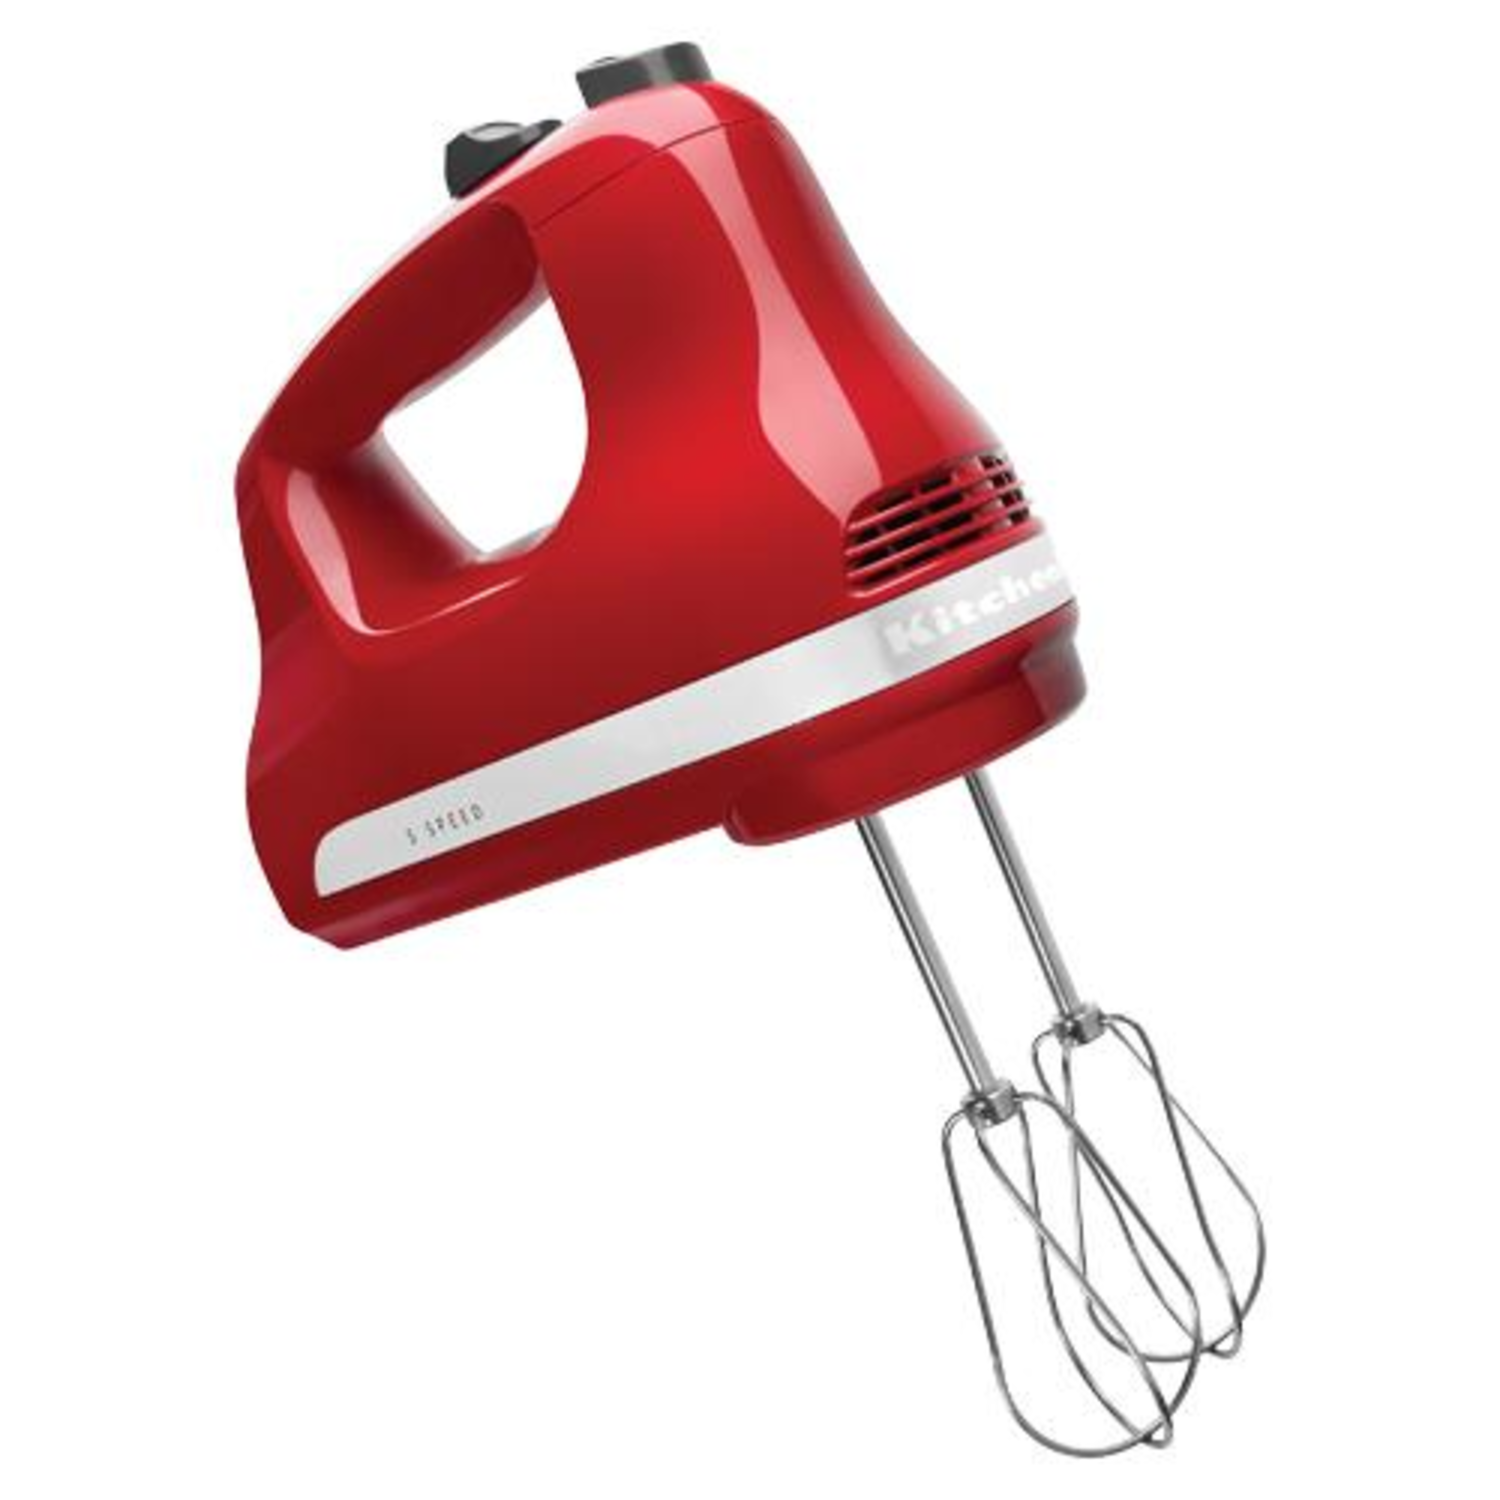 KitchenAid Cordless 7 Speeds Hand Mixer in Empire Red